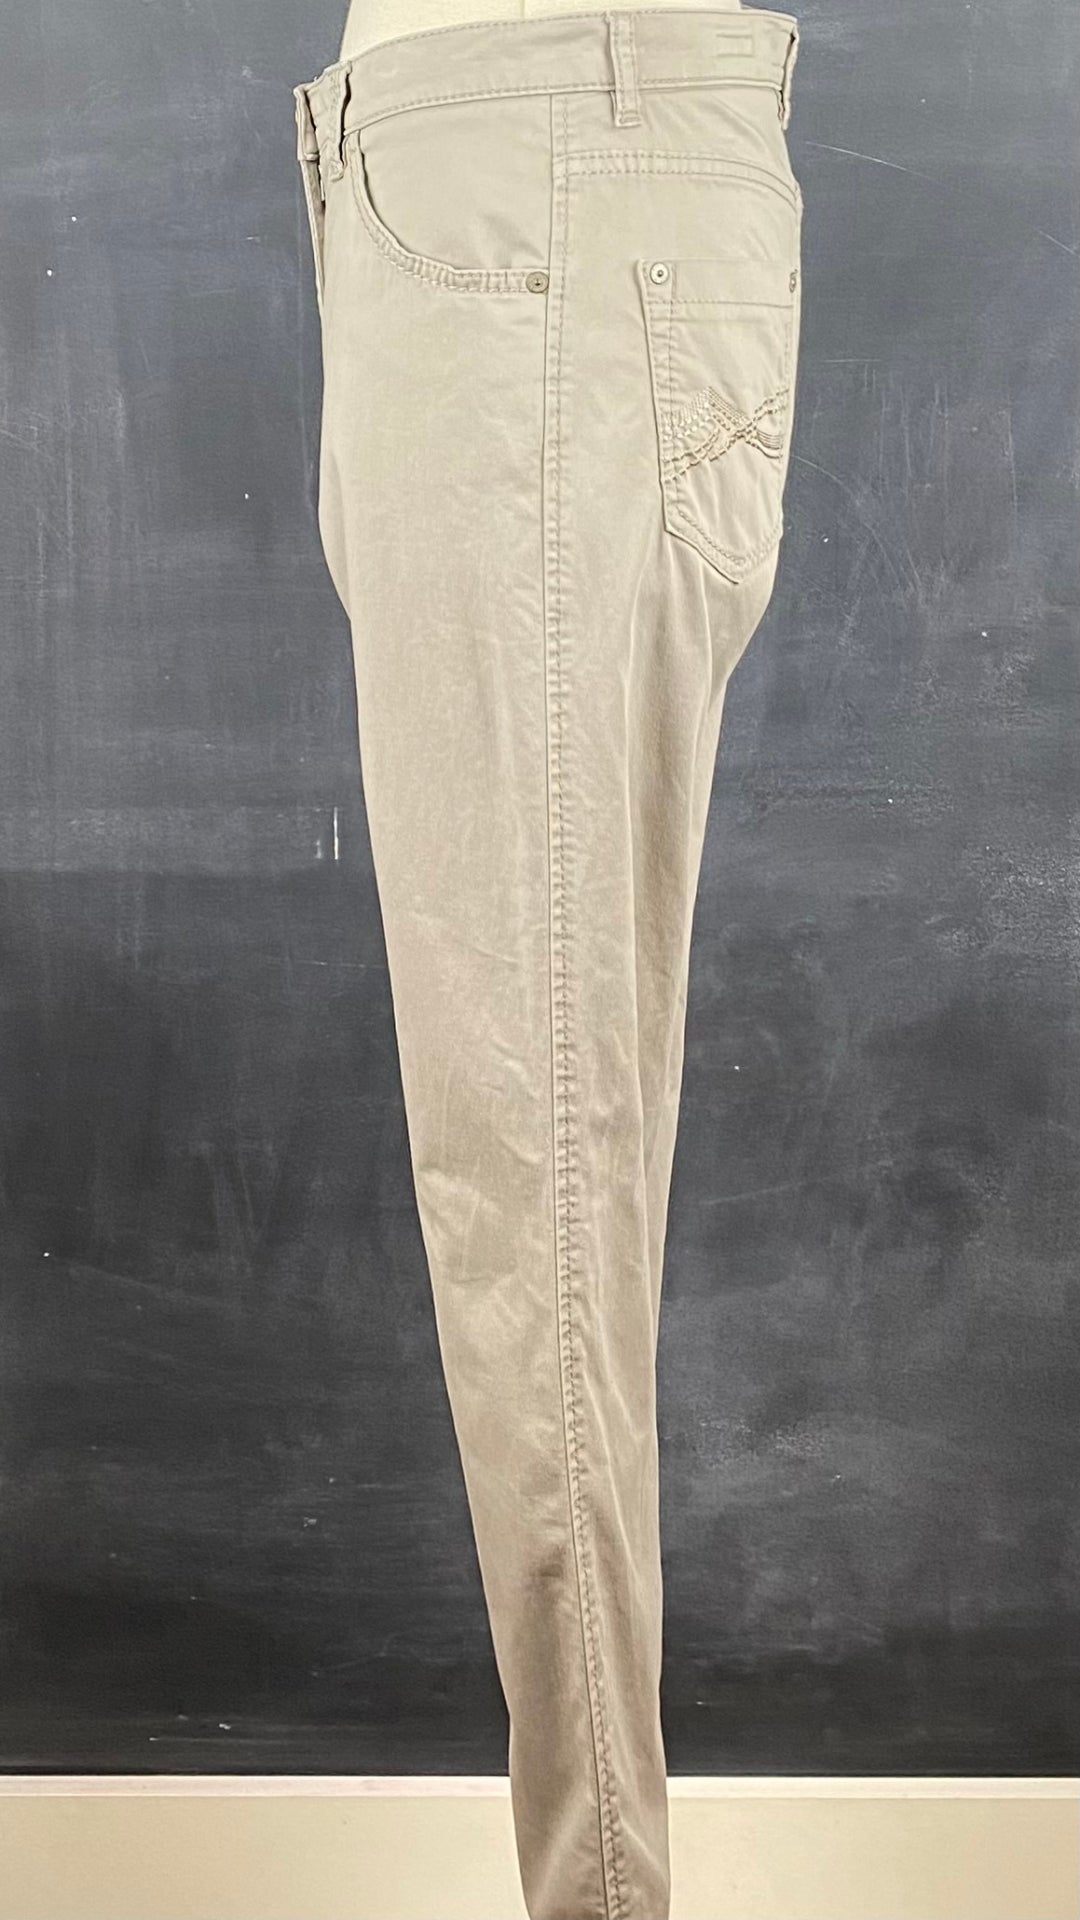 Pantalon taupe coupe droite, marque Brax, taille 27. Vue de côté.